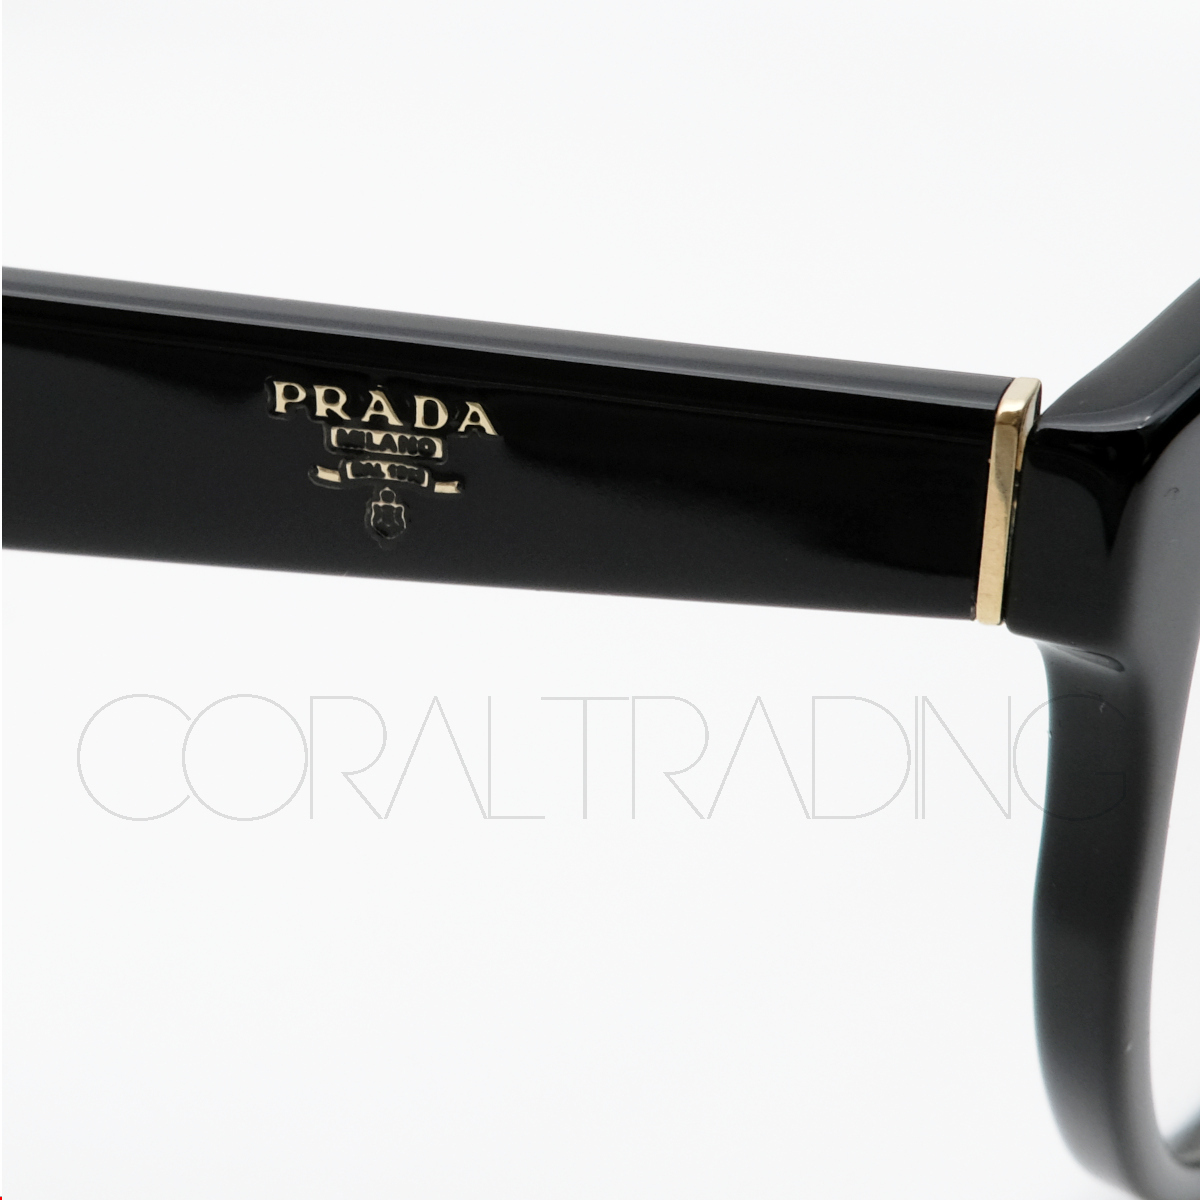 24054★新品本物！PRADA VPR01U 1AB-1O1 ブラック プラダ セルフレーム キャットアイ 高級メガネ 眼鏡 レディース メンズ フォックス